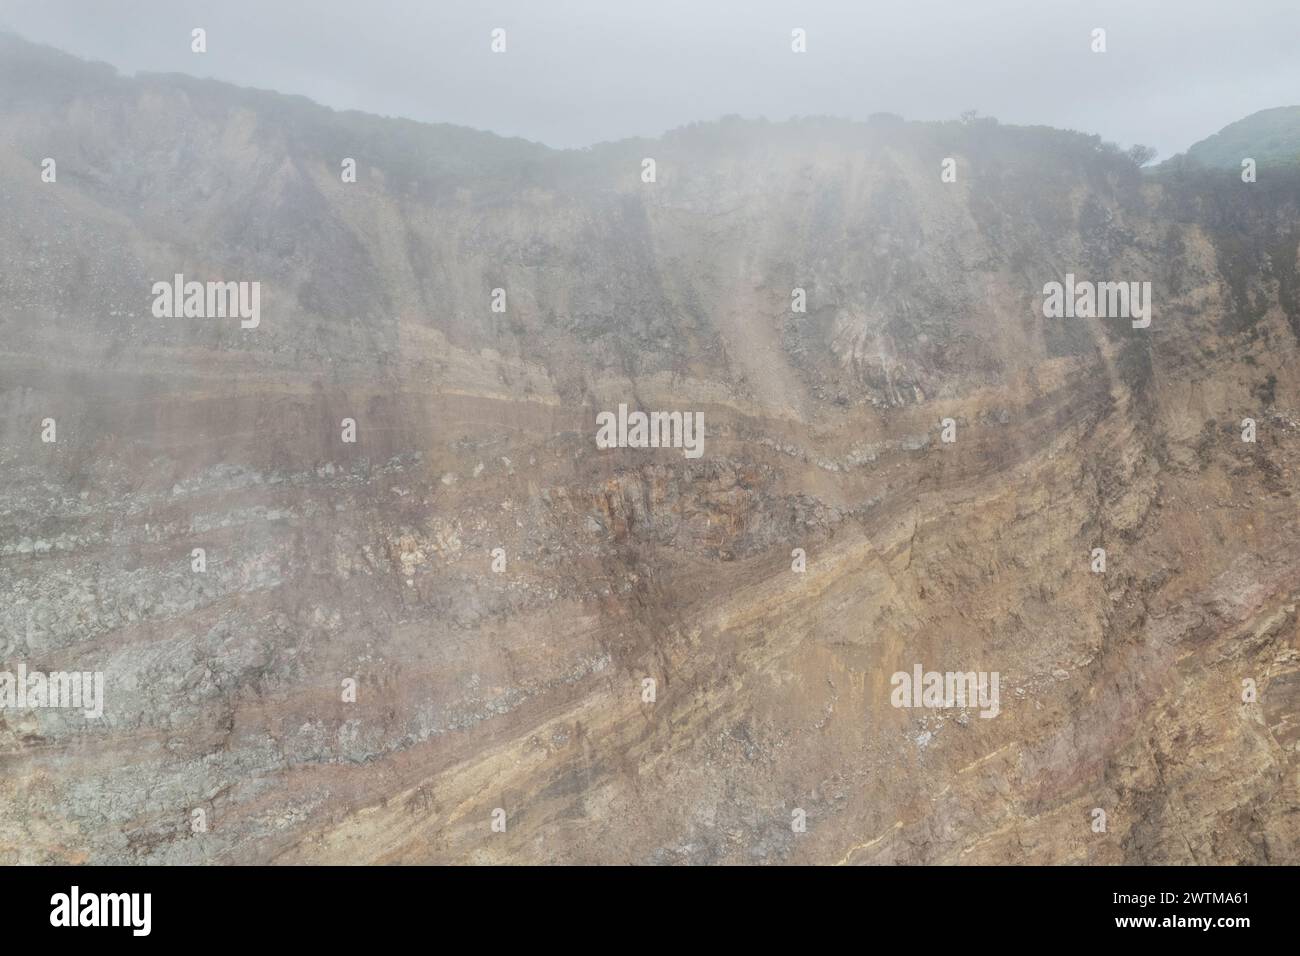 Felsiger Stein Vulkanhügel in rauchiger Himmelsbeleuchtung mit Drohnenblick Stockfoto